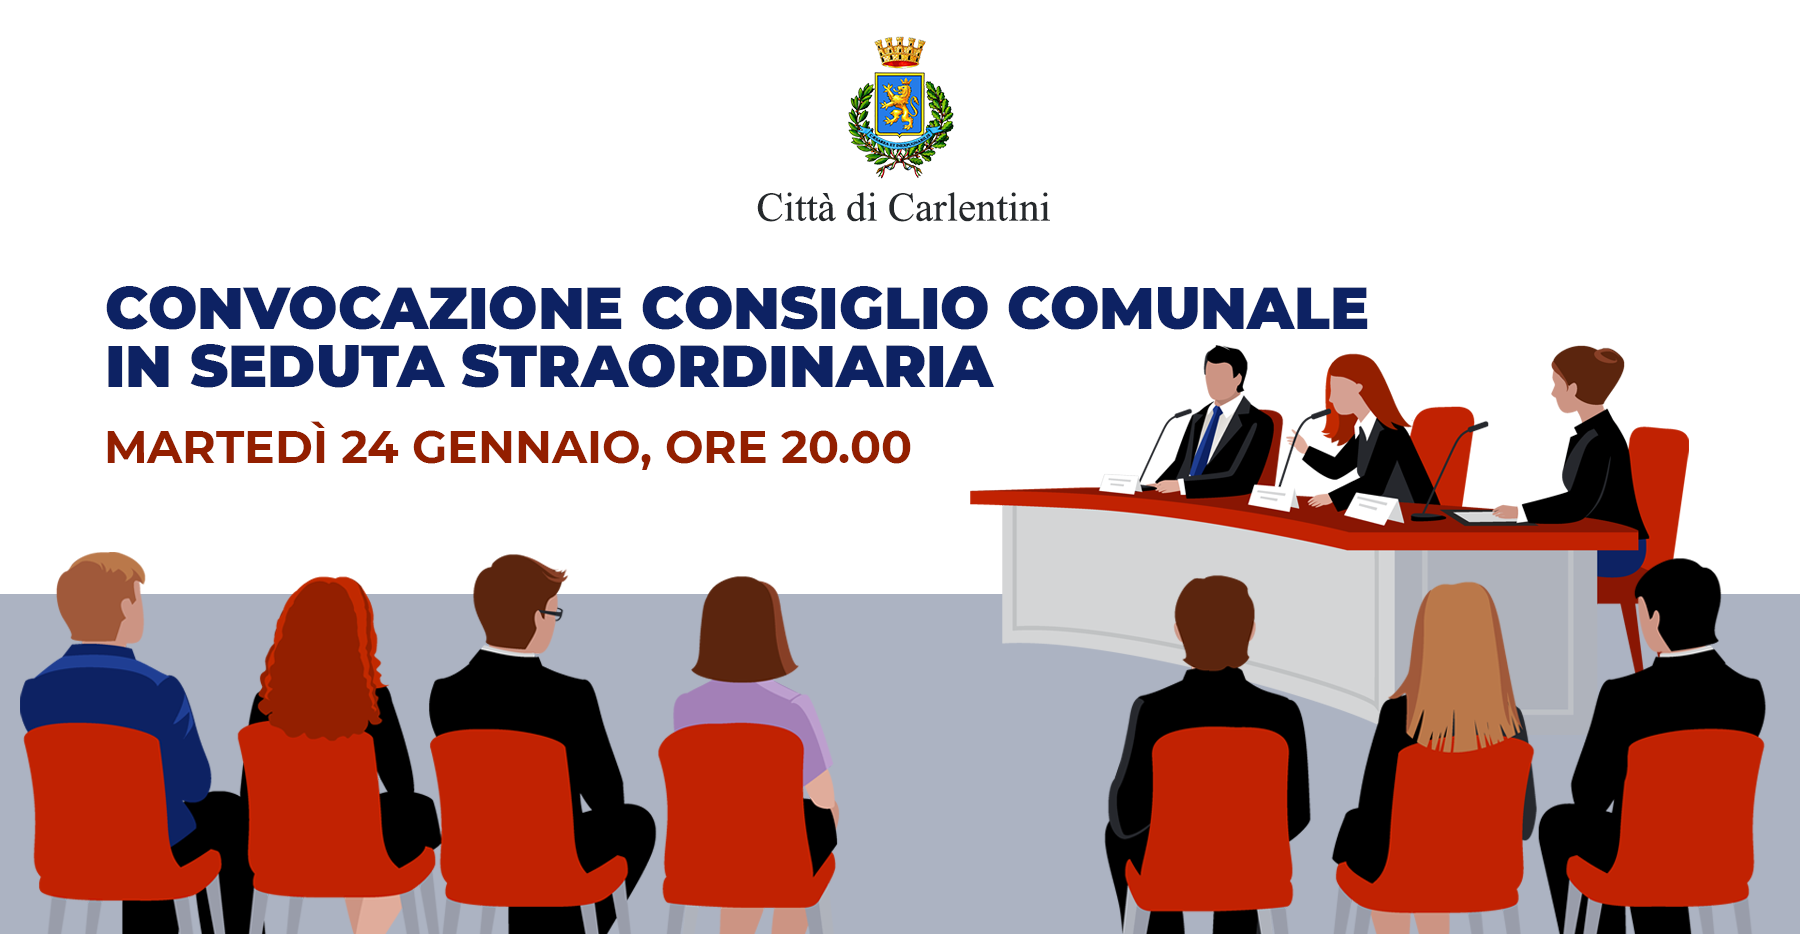 Consiglio Comunale: convocazione in seduta straordinaria per domani, martedì 24 gennaio, ore 20.00